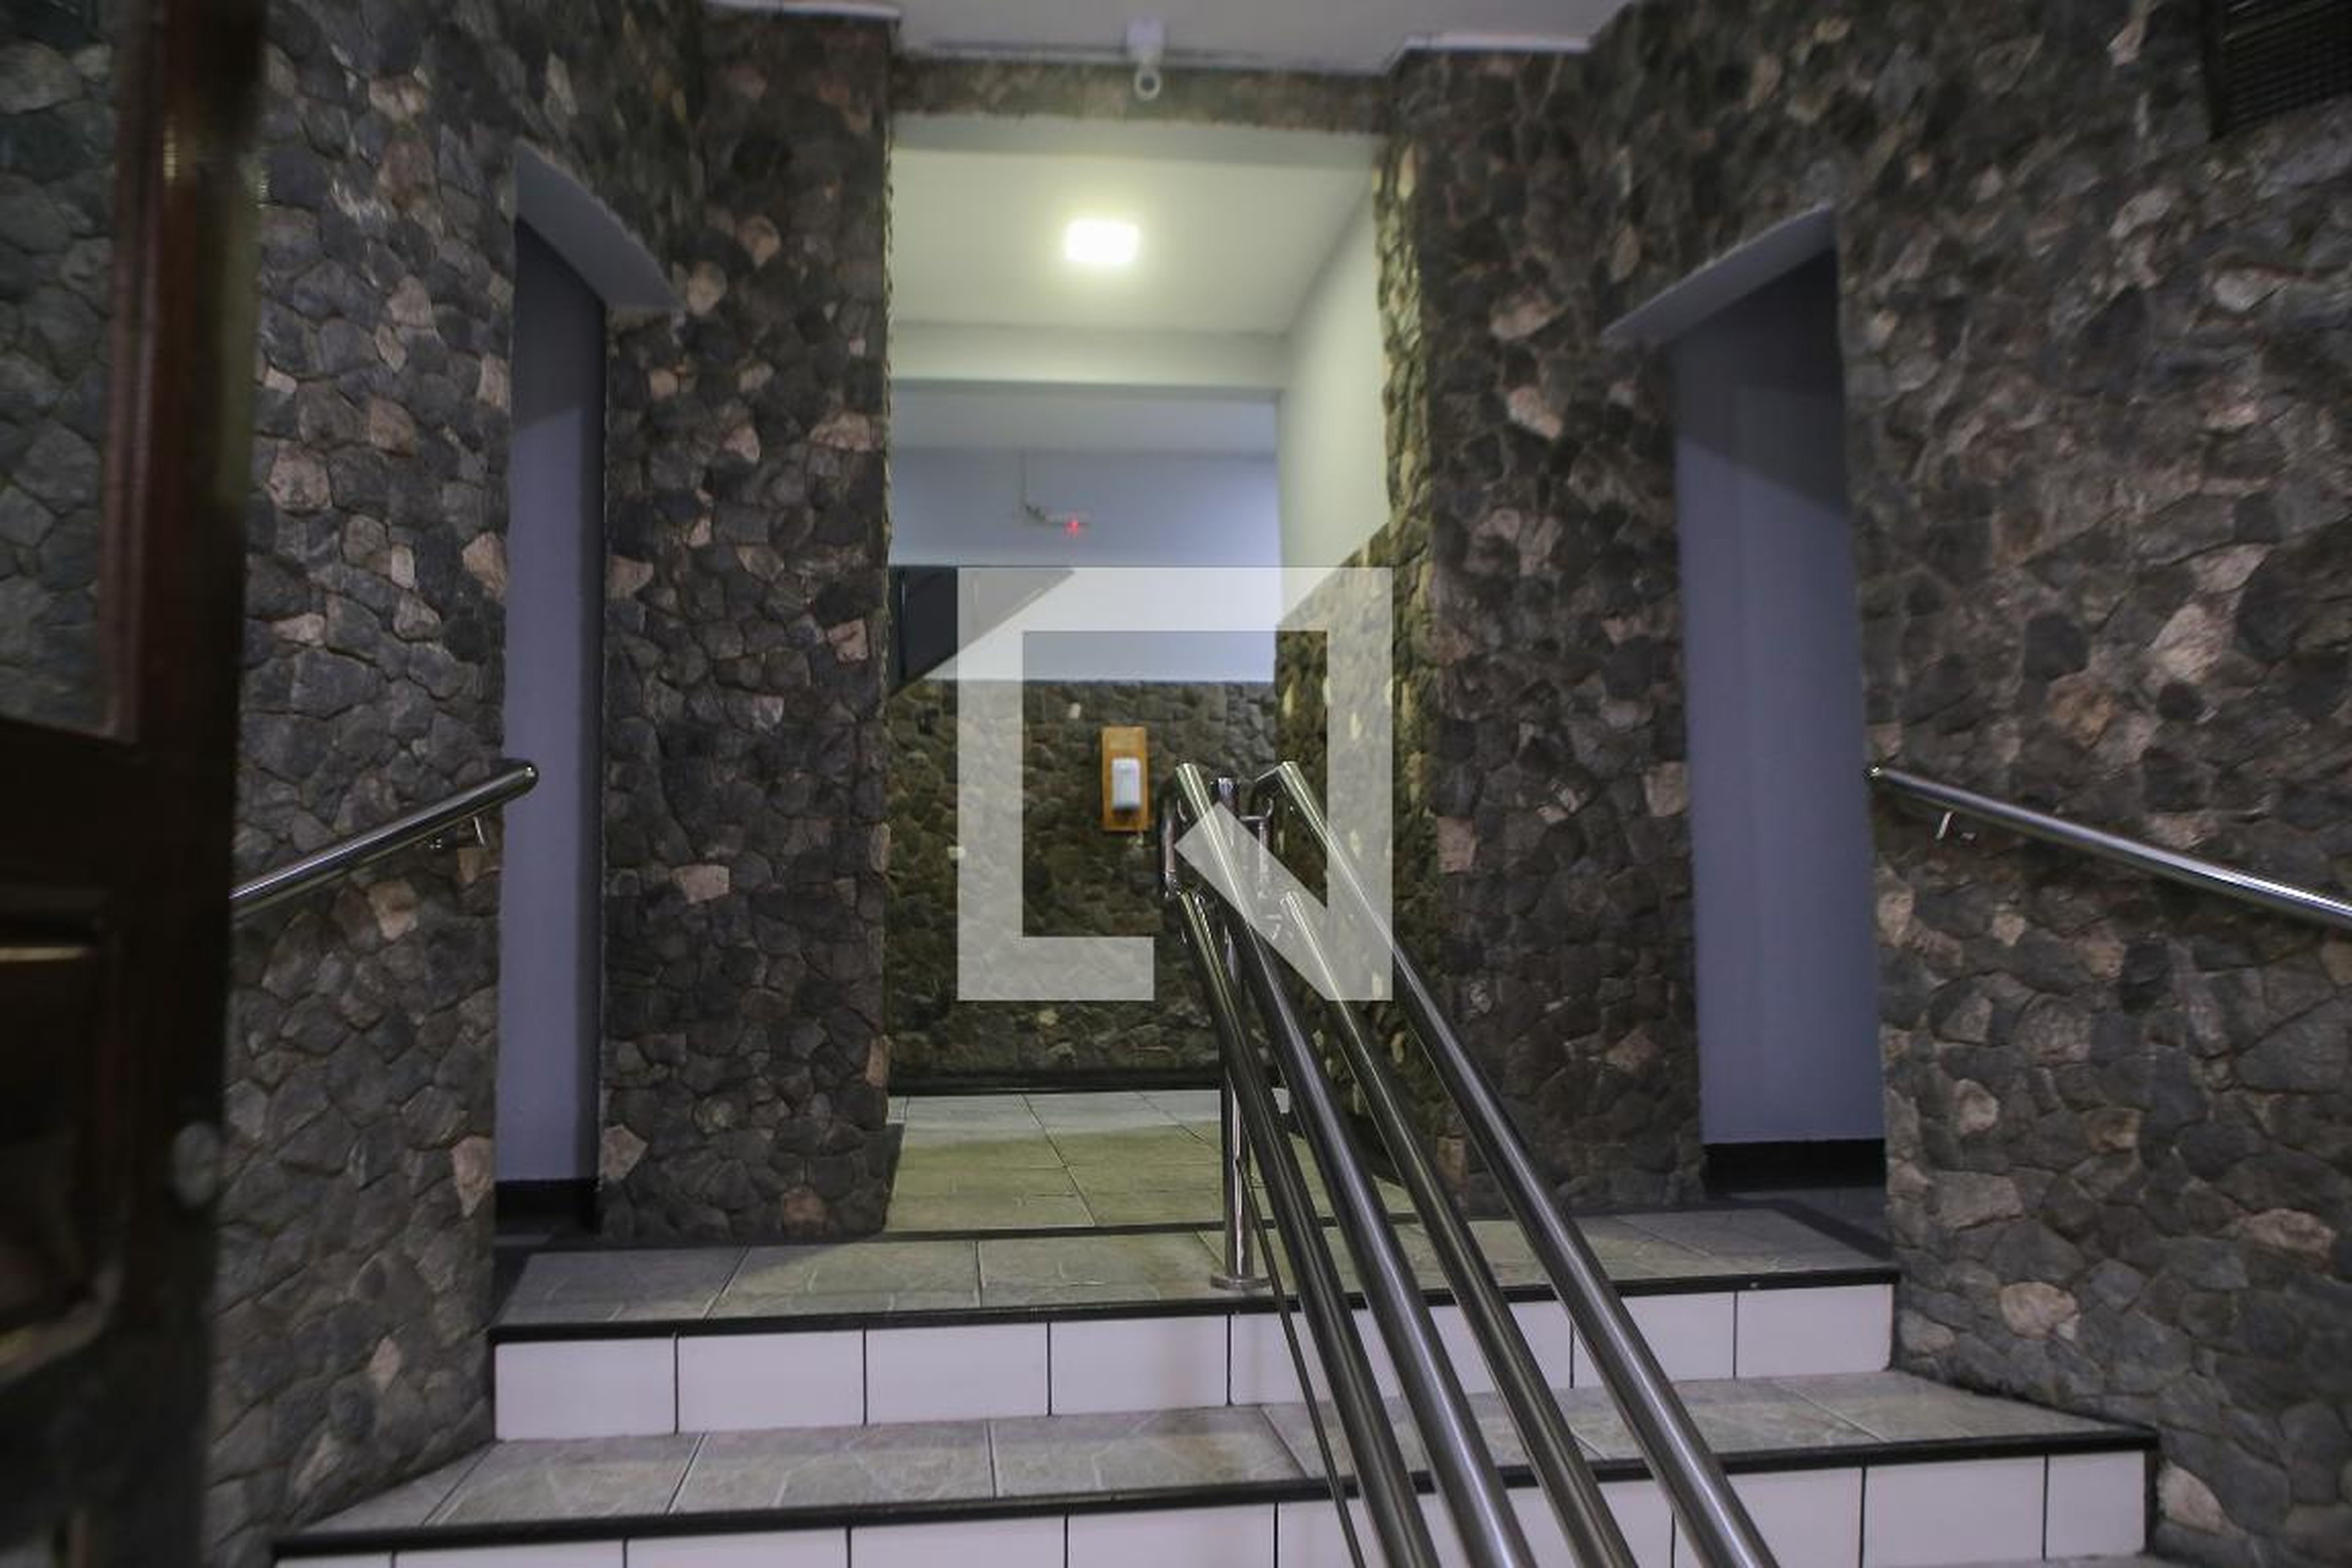 Hall de entrada - Sãodimas